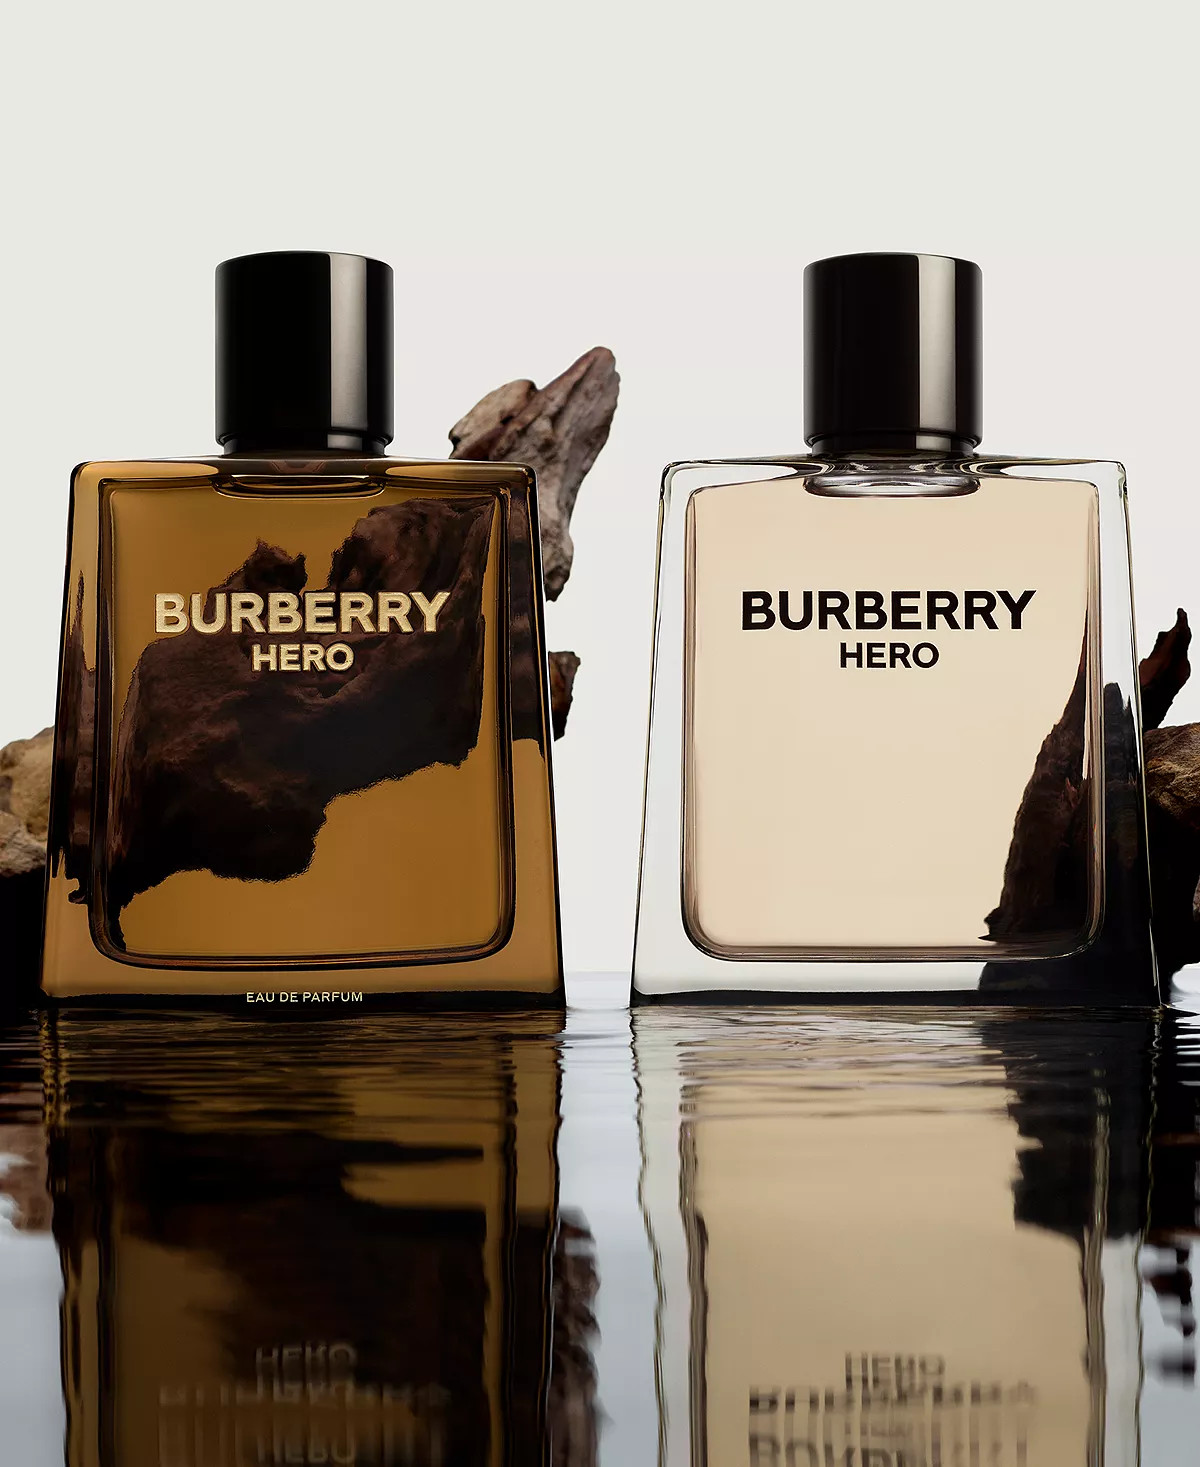 Burberry Hero Eau De Parfum: Another Soulless Copycat ~ Fragrance Reviews